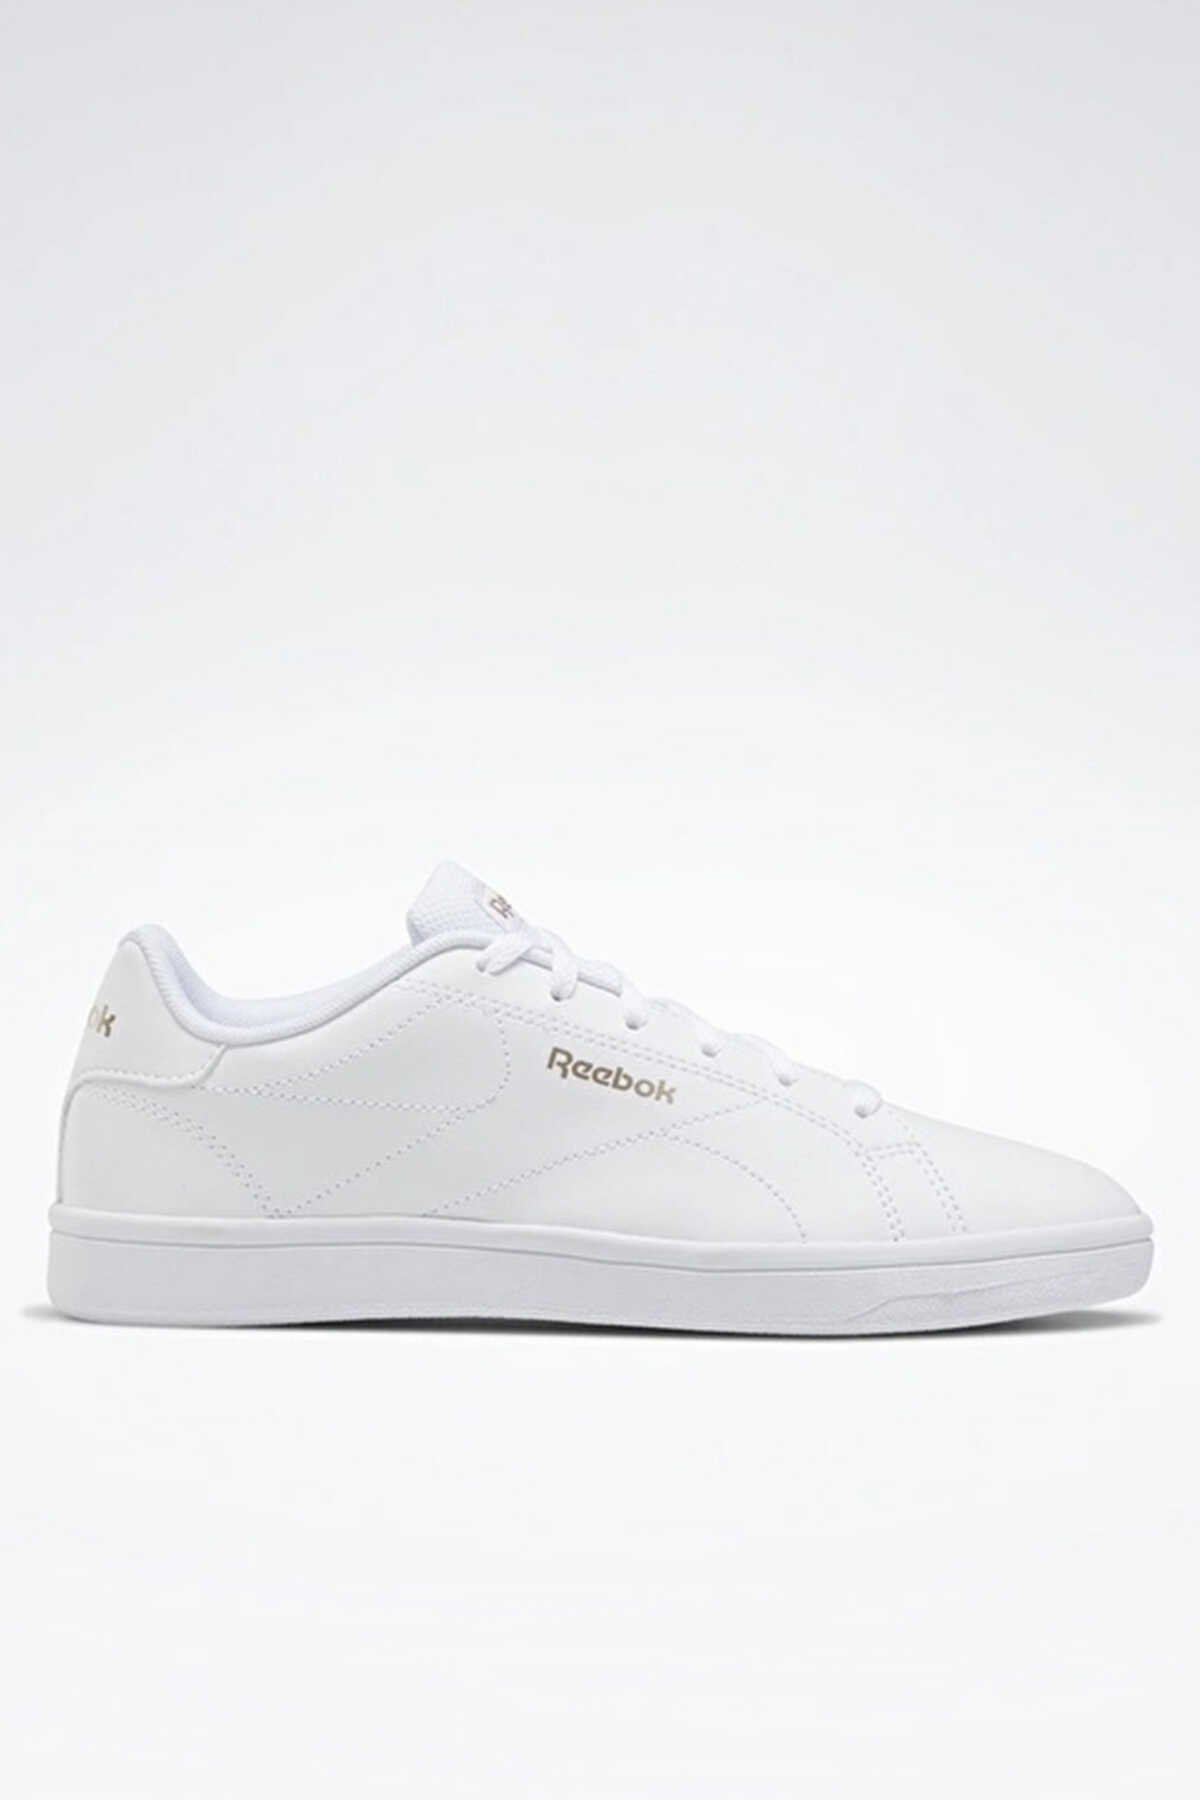 Reebok - Reebok ROYAL COMPLETE CLN Sneaker Kadın Ayakkabı Beyaz_1